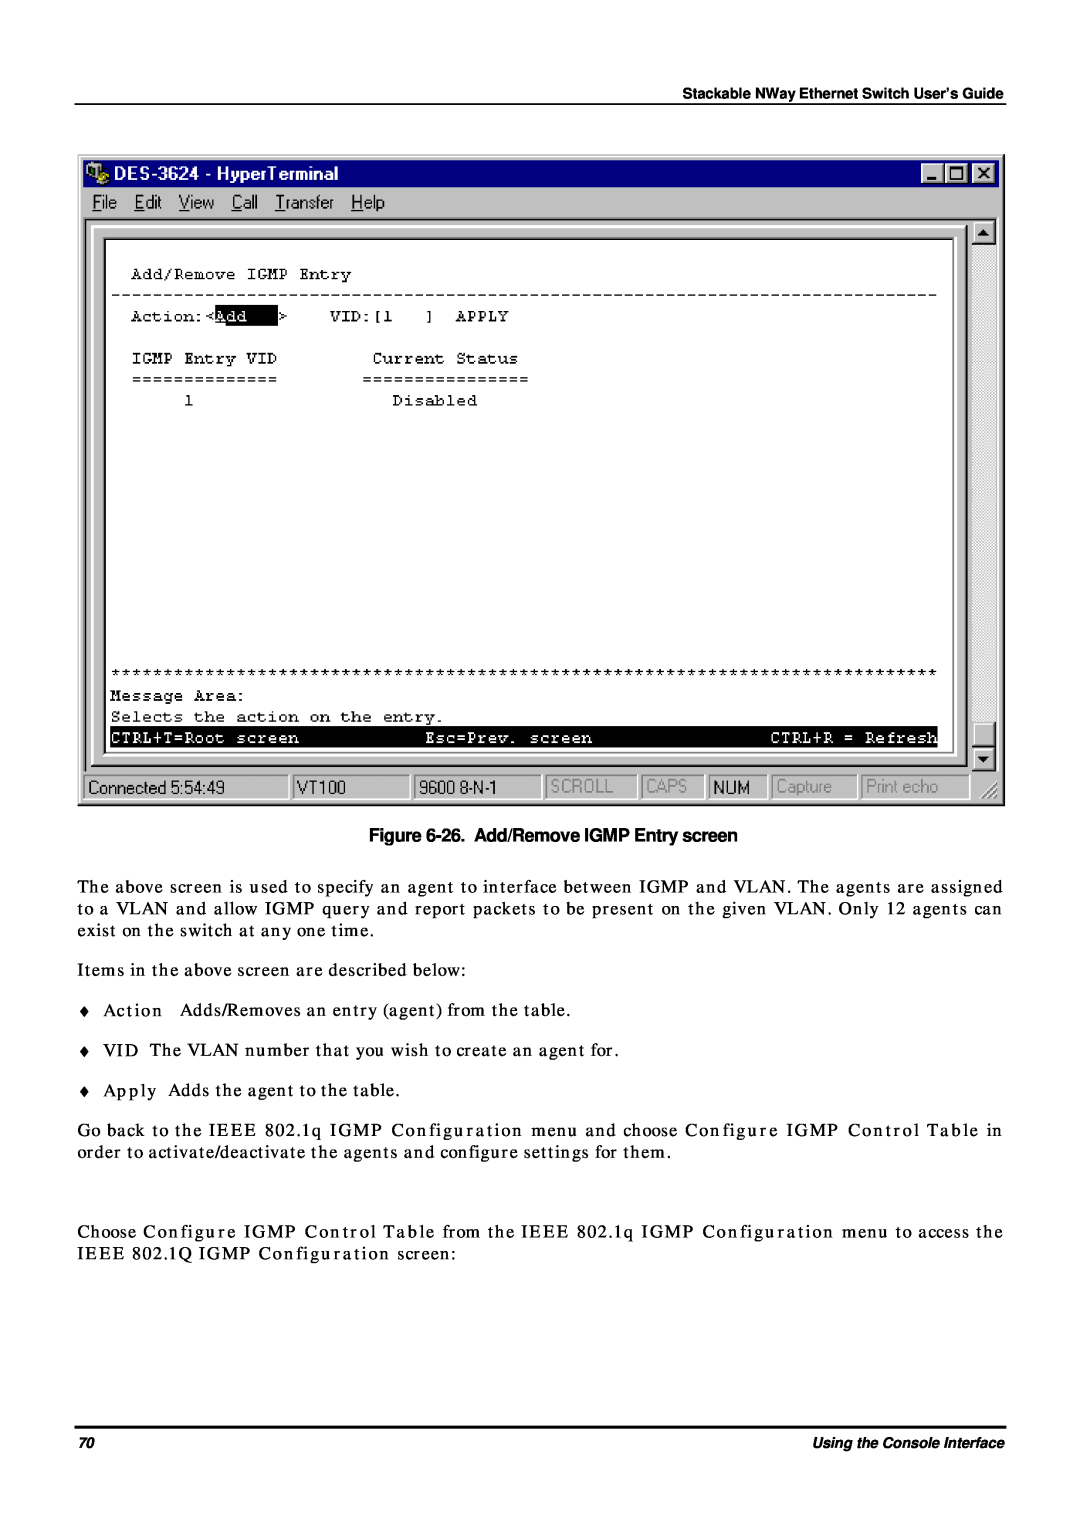 D-Link DES-3624 manual 26. Add/Remove IGMP Entry screen 